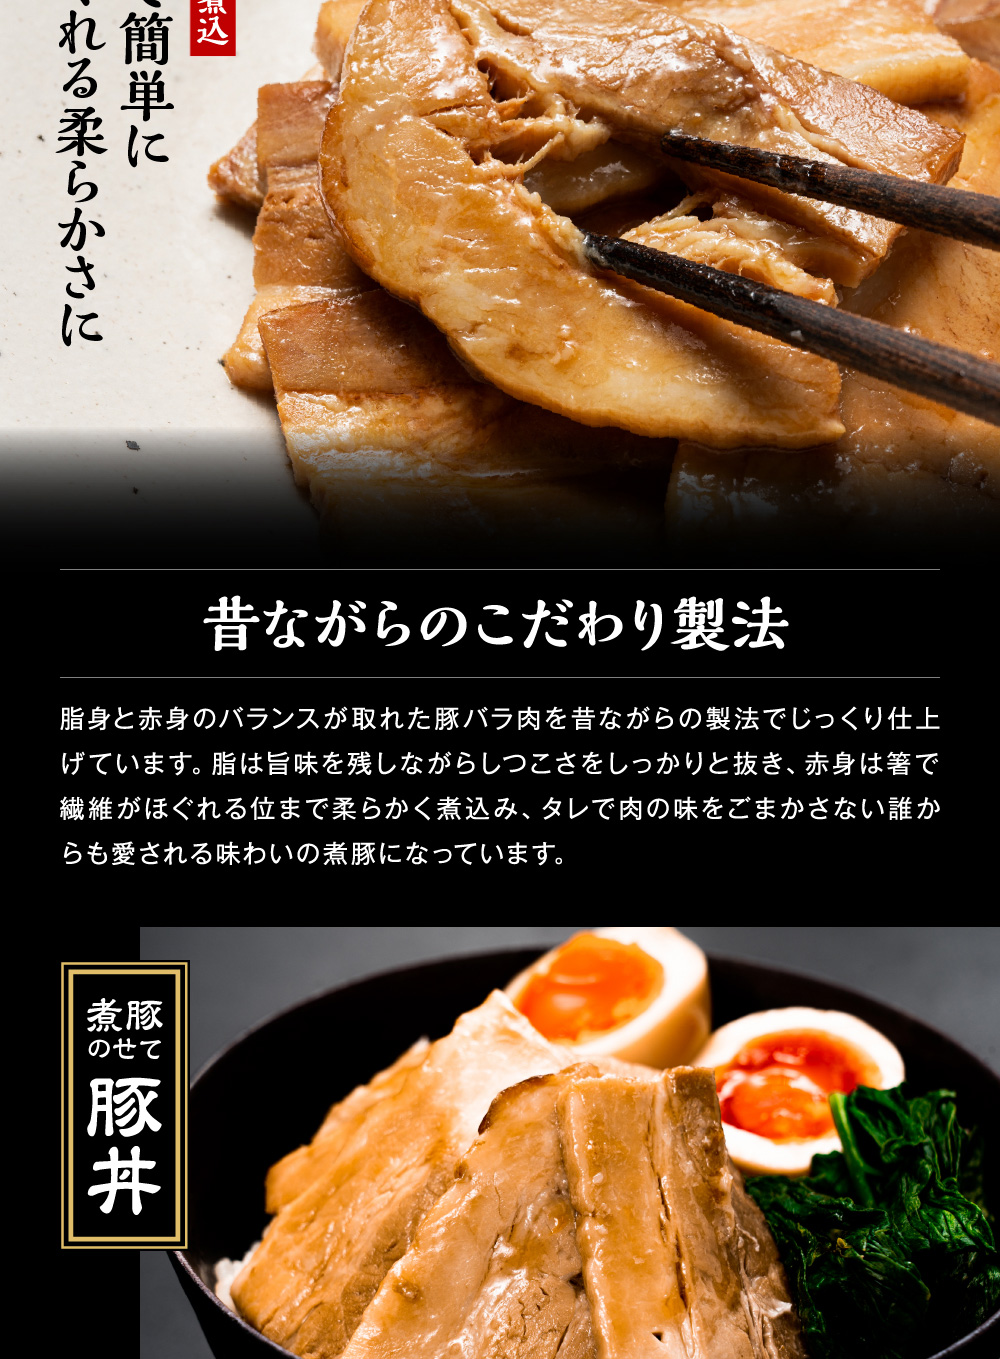 The Oniku 肉の卸問屋アオノ煮豚の切り落とし 250g×2パック 計500g 【在庫あり 即納】